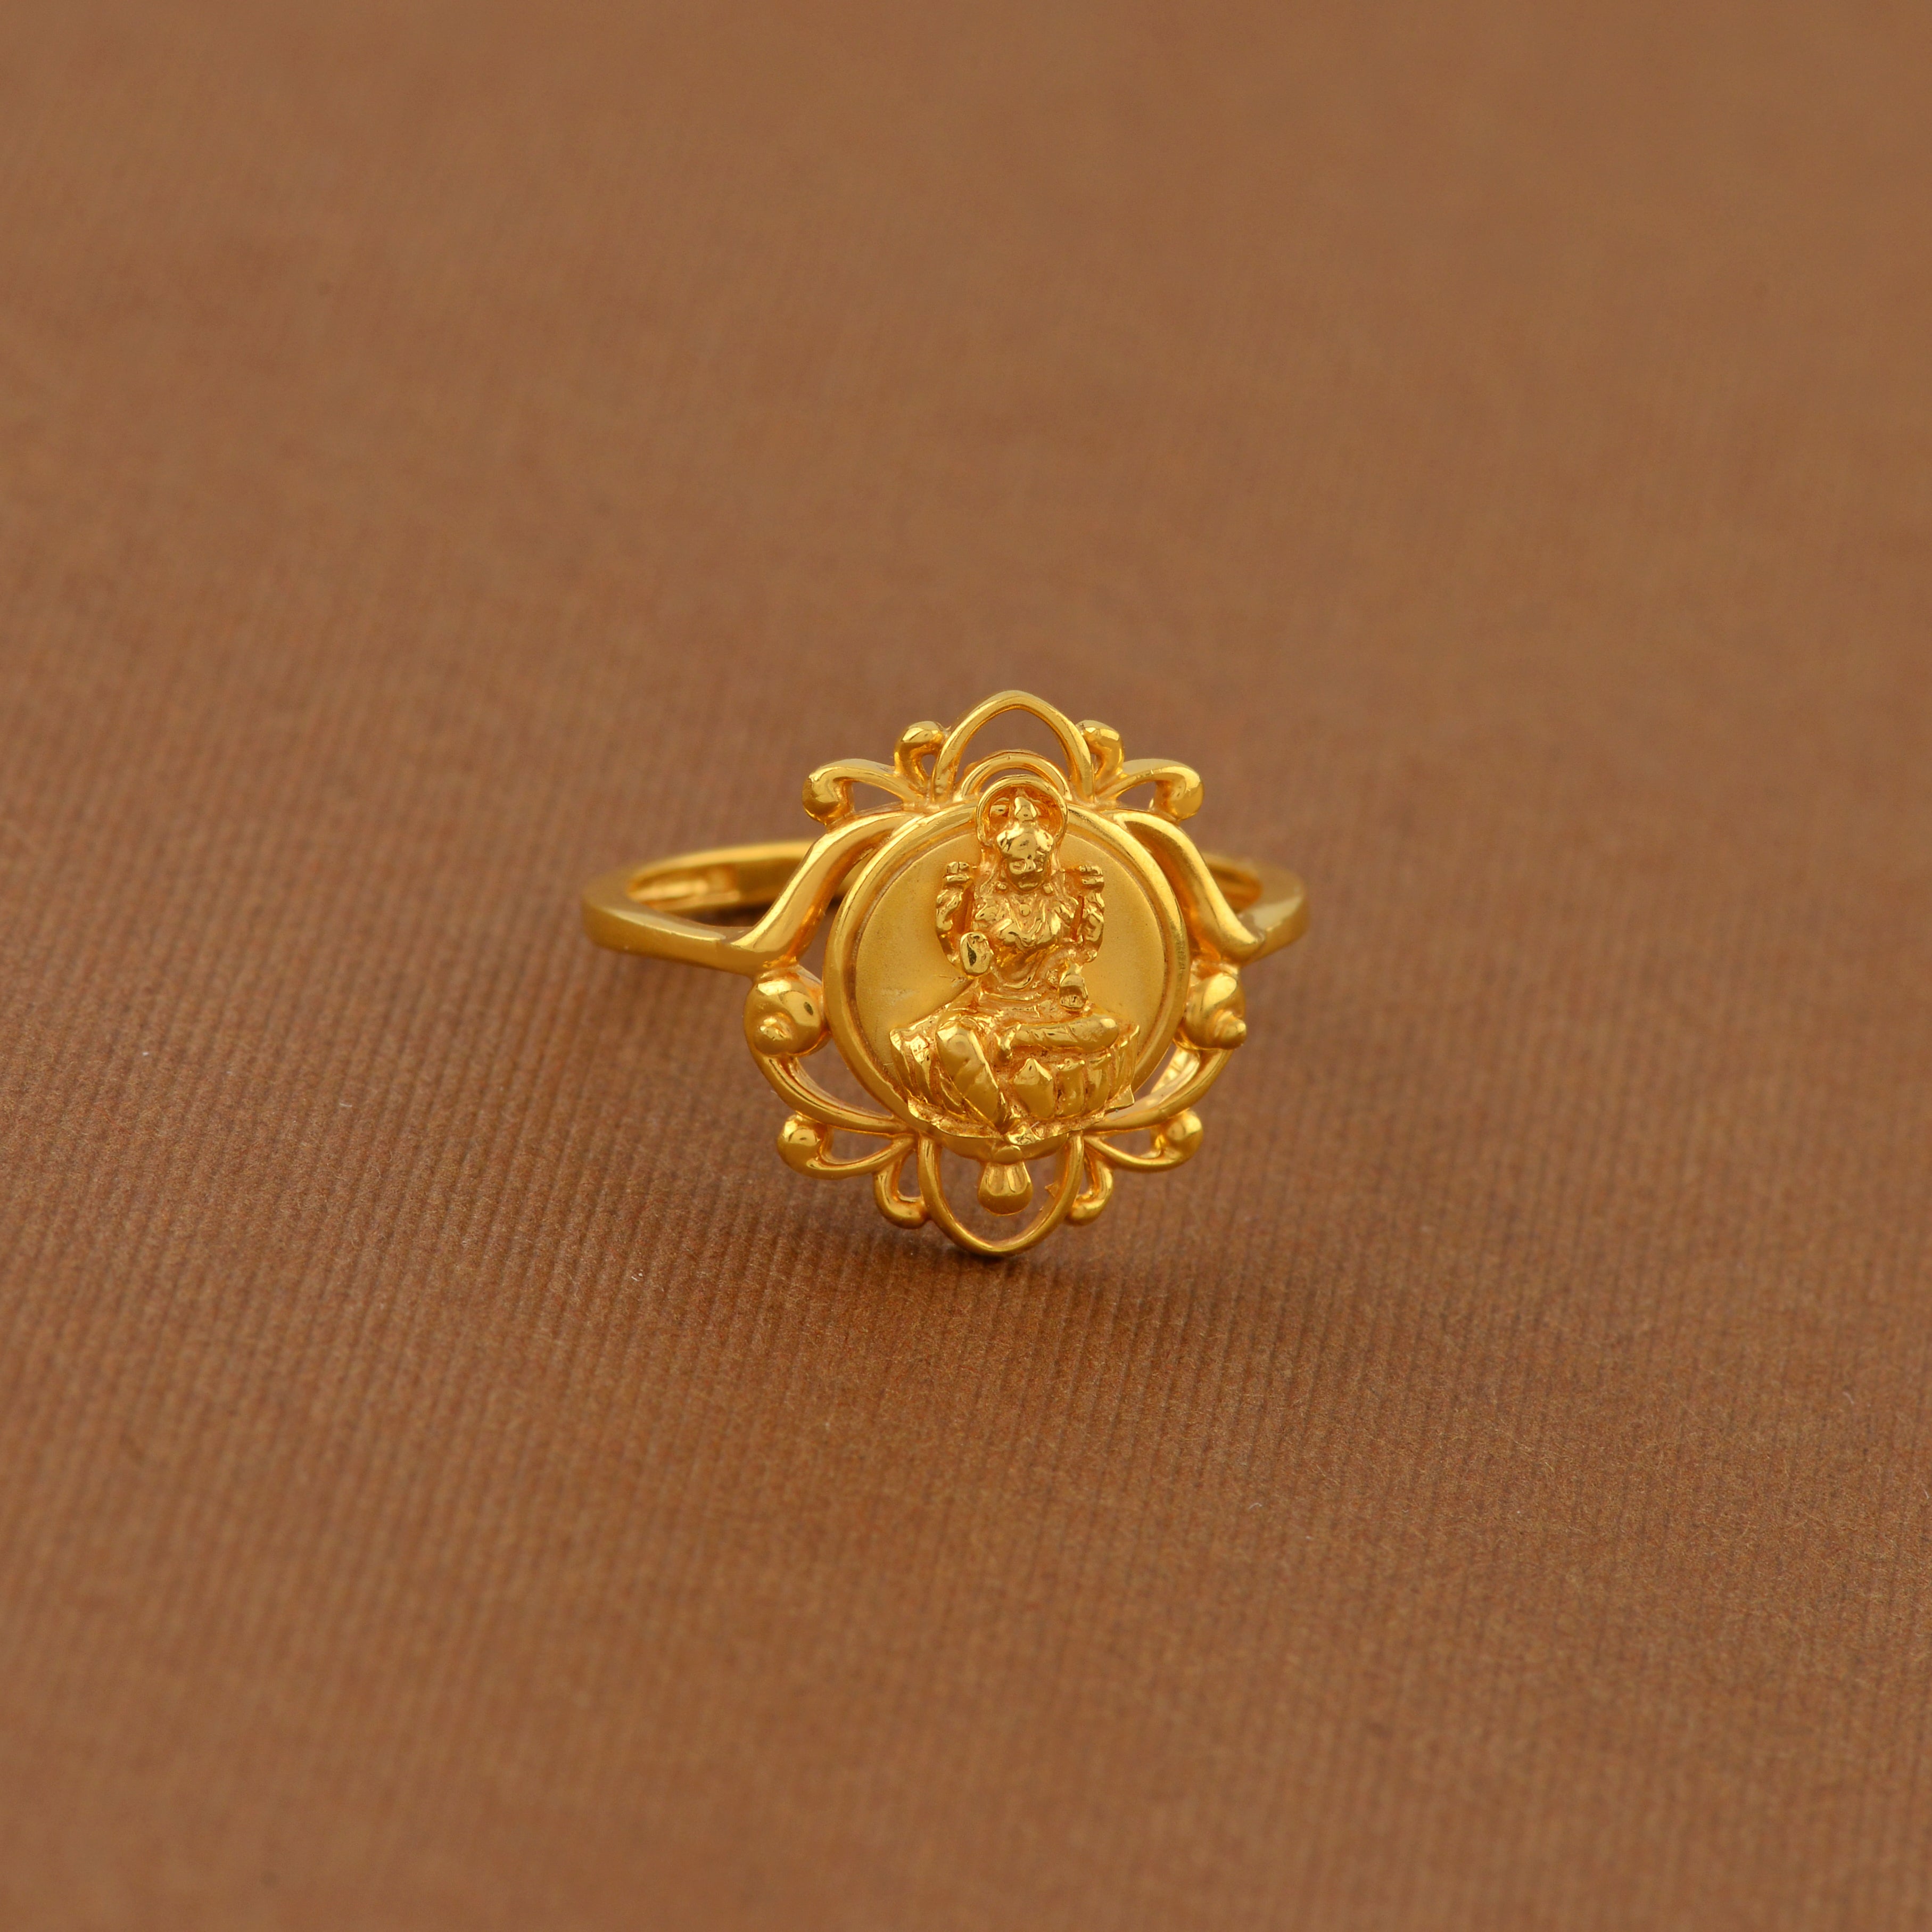 Lady Lakshmi Devi Ring Designs | 3d-mon.com